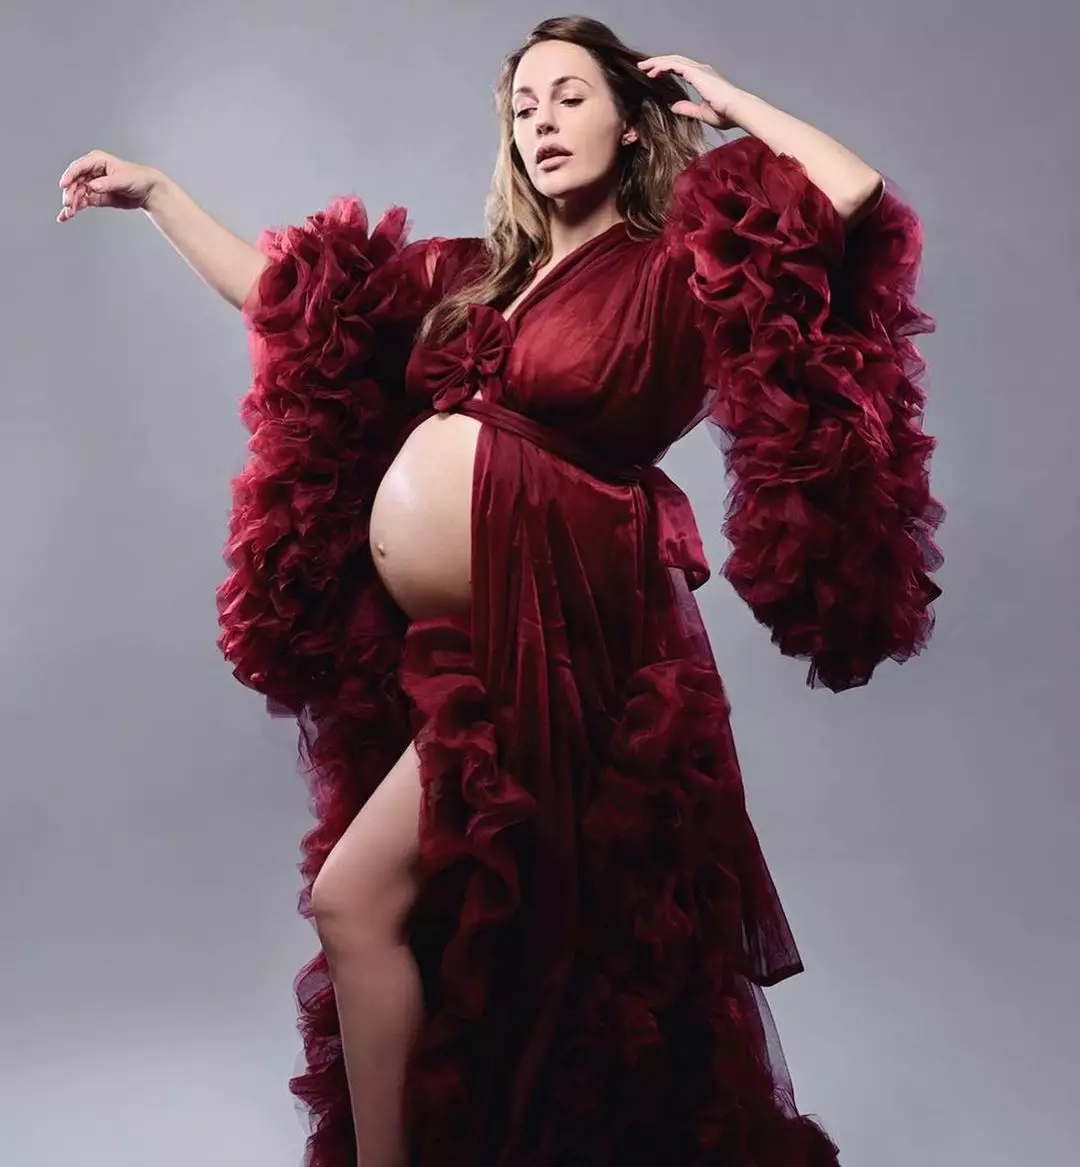 Мерьем Узерли на последнем месяце беременности